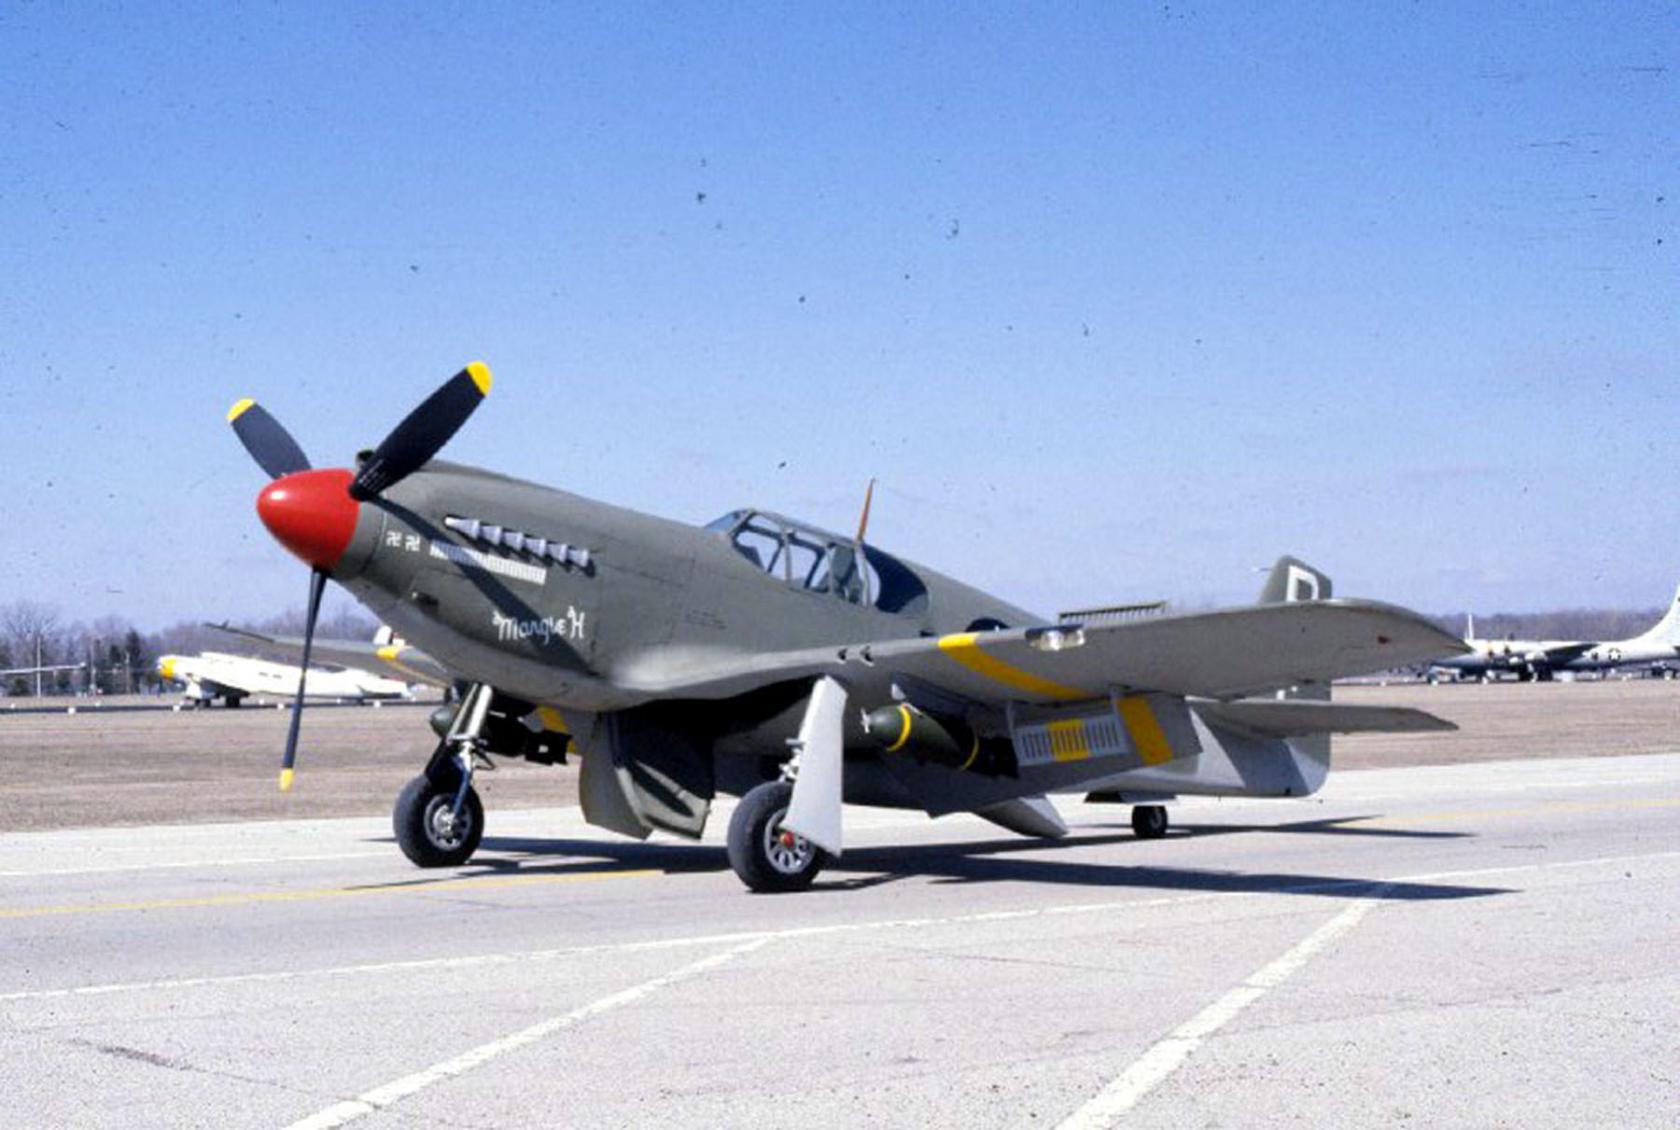 А-36 Apache — грозный дух американских прерий ...